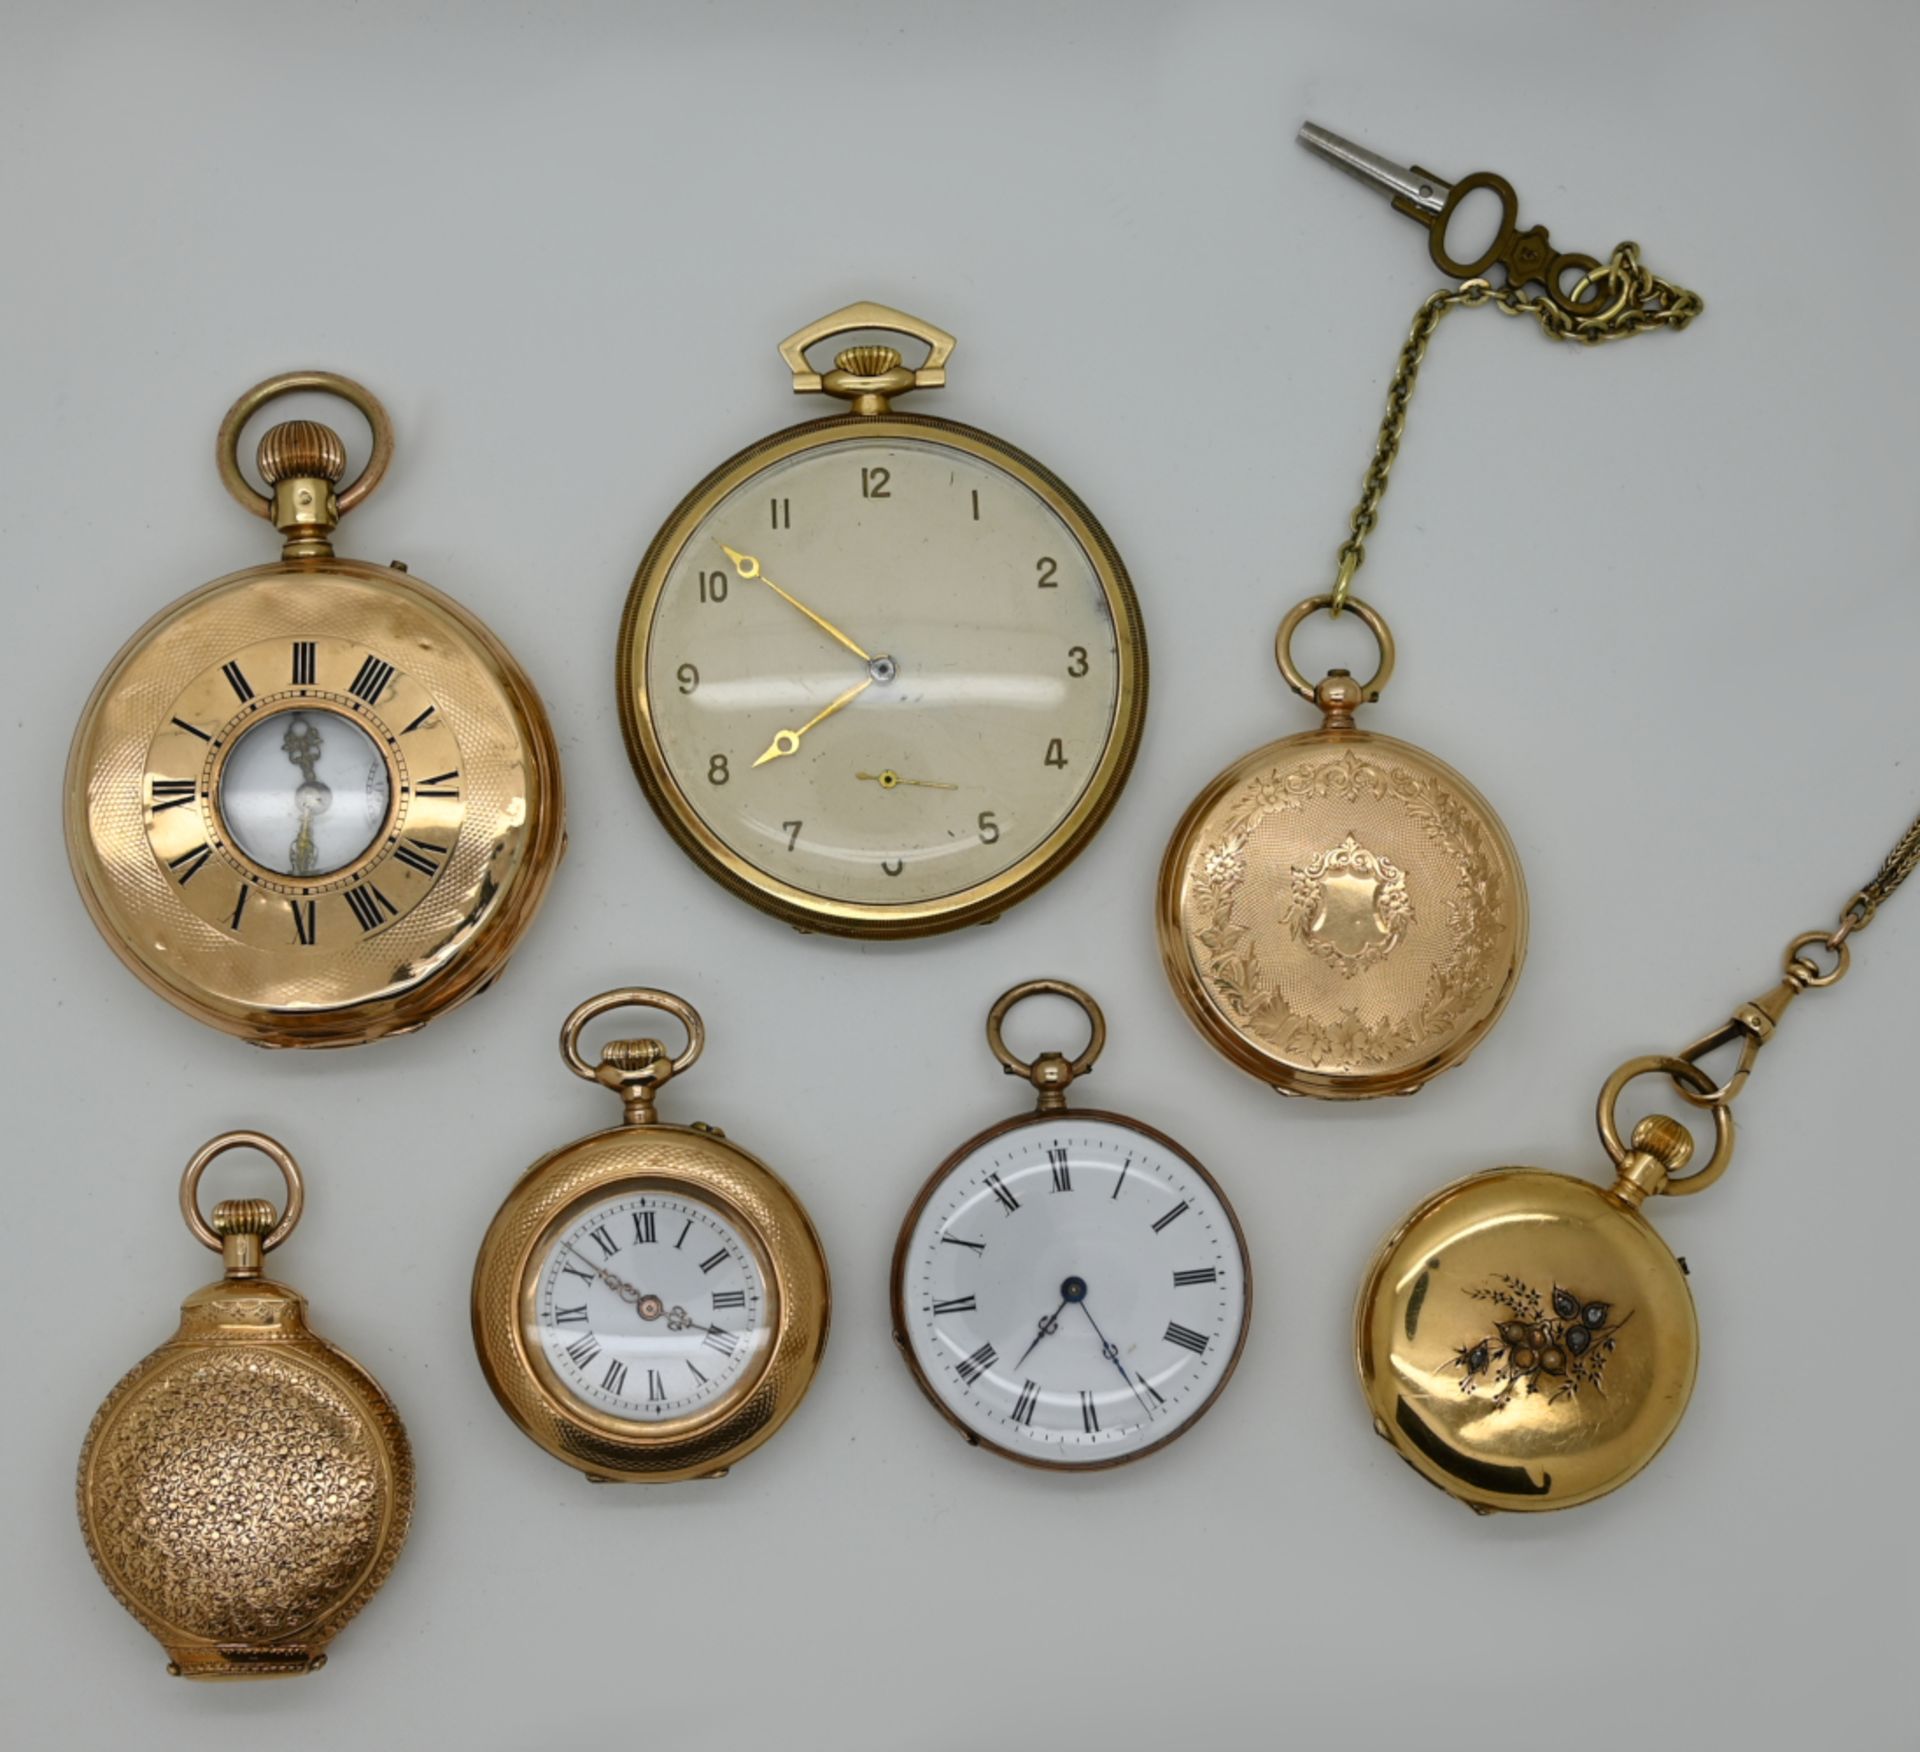 1 Damentaschenuhr GG 18ct., um 1900, mit Diamanten, Glas fehlt, Perlen fehlen, mit Uhrkette undeutli